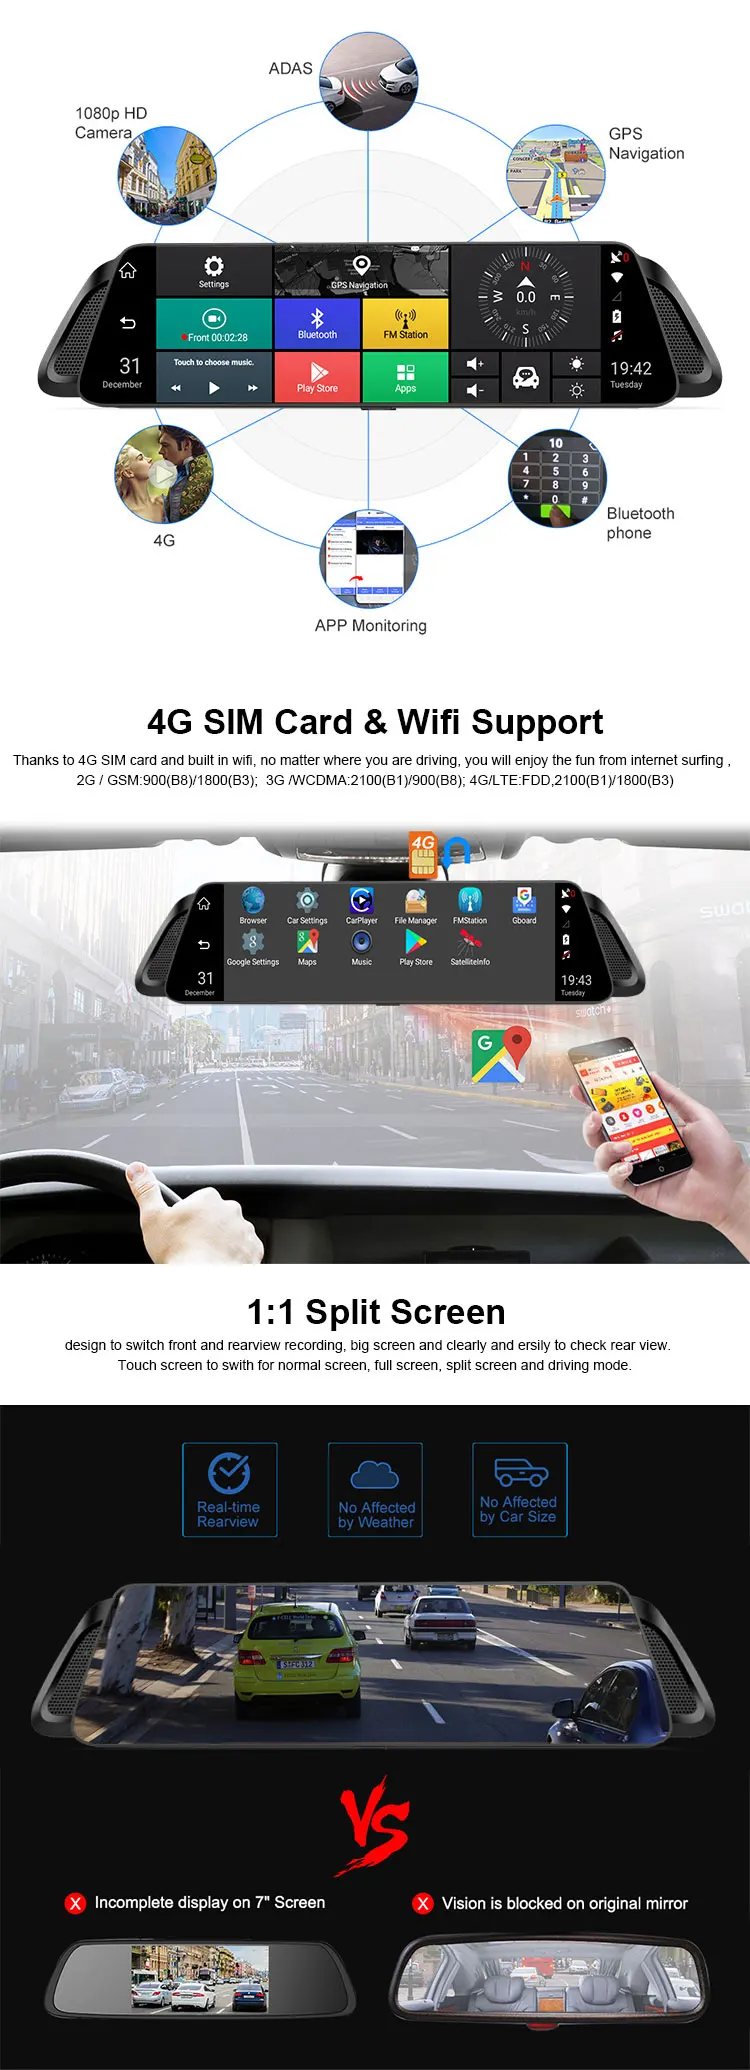 2020 Novo Produto ADAS 4G Car DVR 10 "Espelho Retrovisor Câmera Full HD 1080P Android GPS Dirigindo Video Recorder Dash Cam